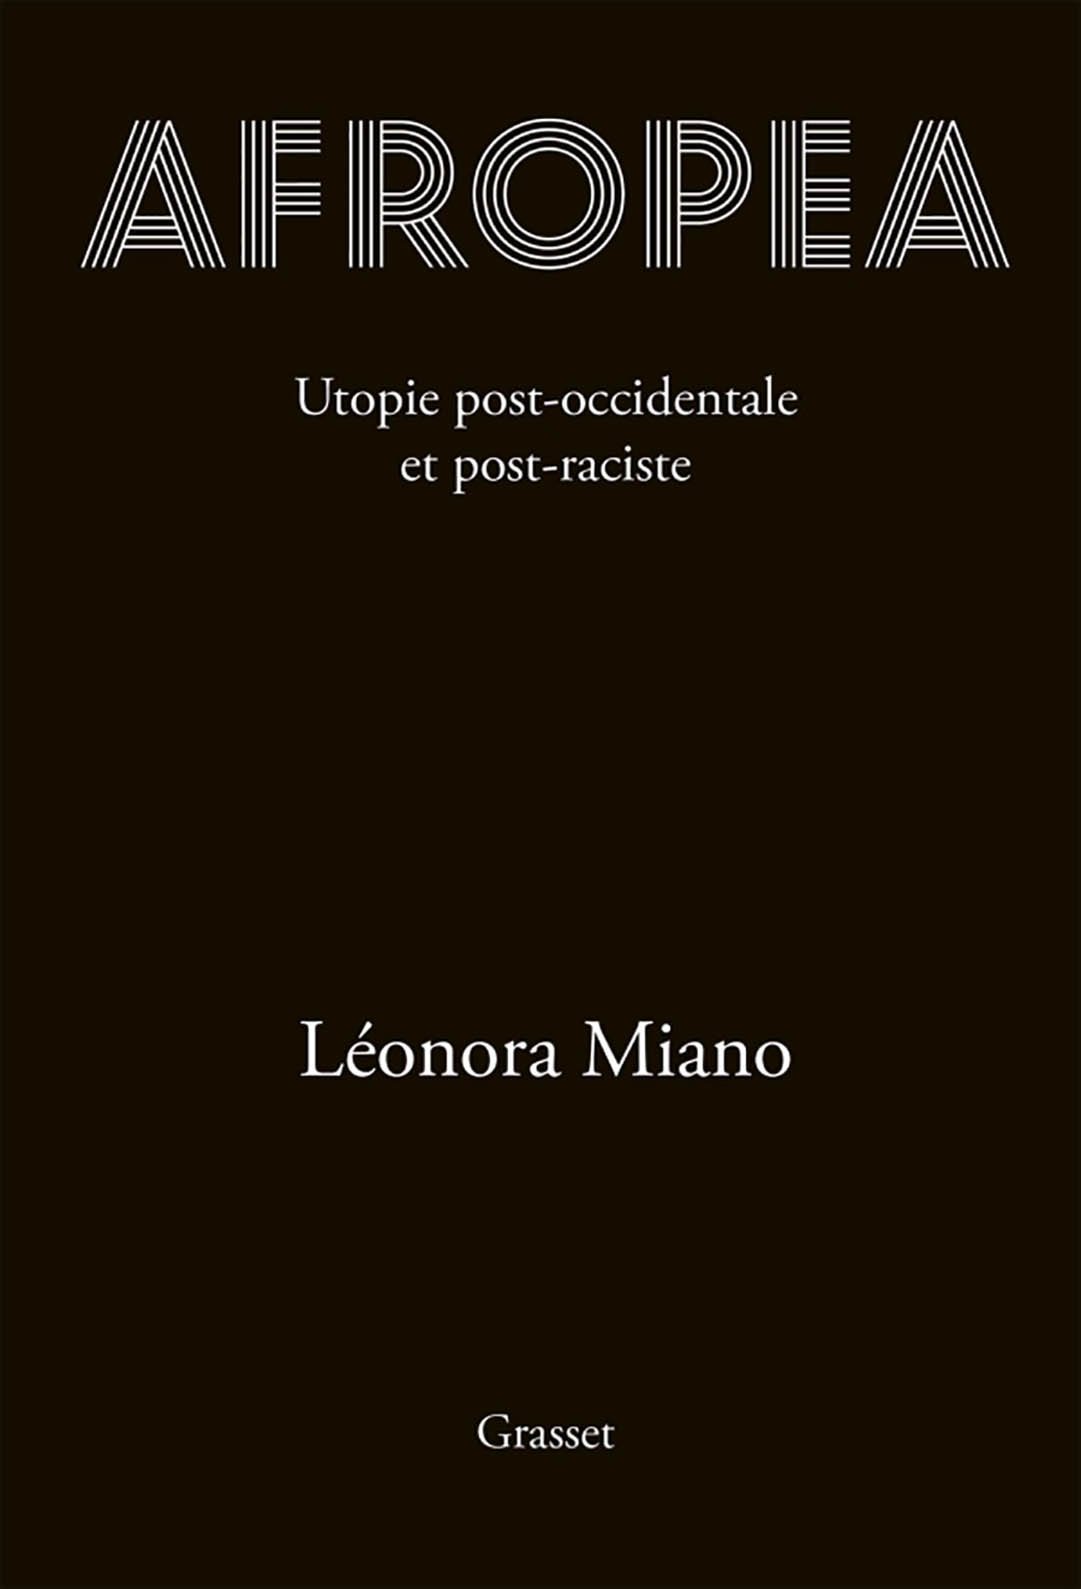 « Afropea », de Léonora Miano, est paru chez Grasset le 30 septembre 2020 (224 pages, 18,50 euros). &copy; Editions Grasset